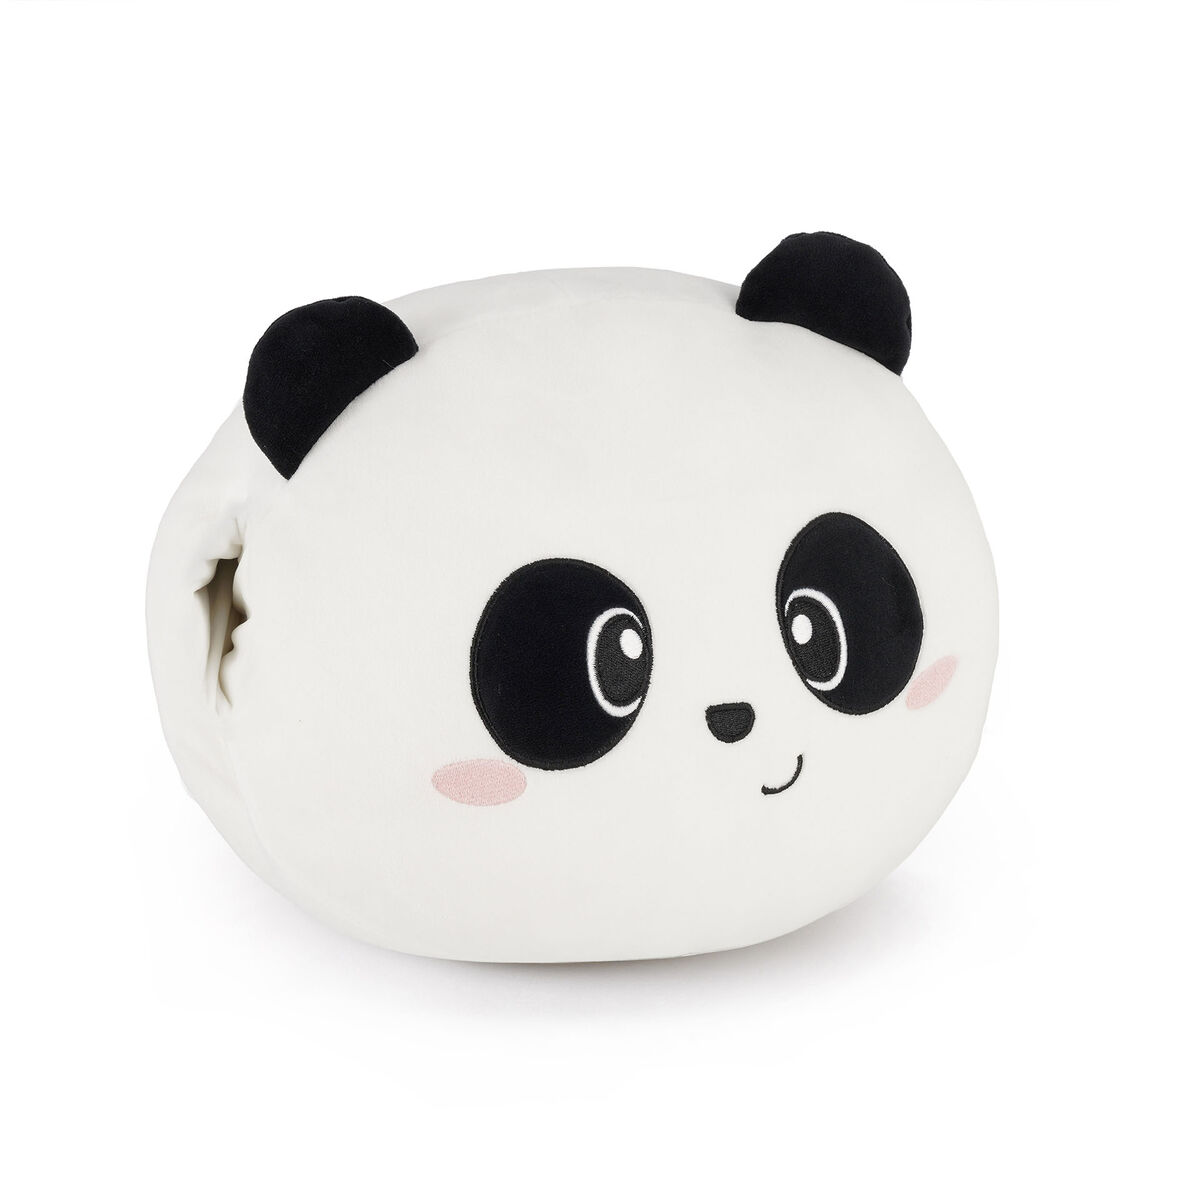 Legami Panda Collection